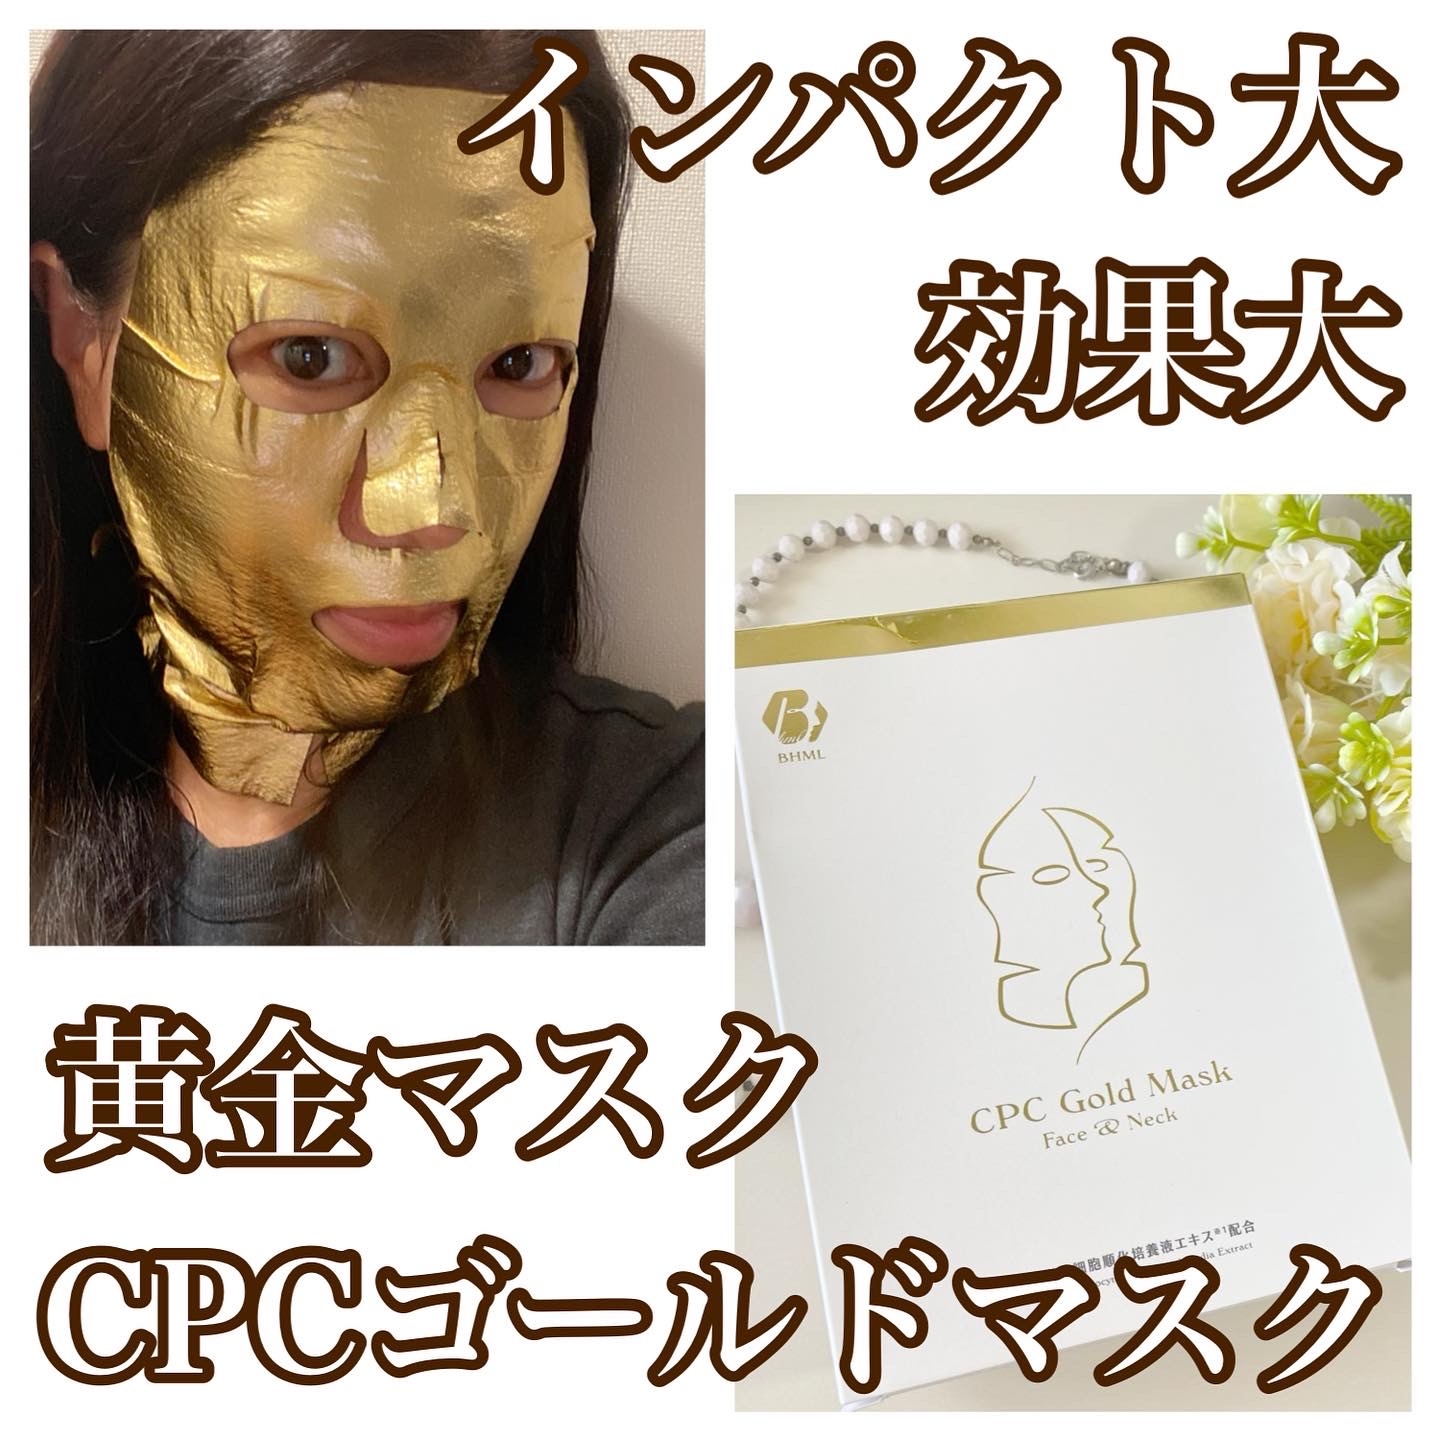 INFIXbeauty CPCゴールドマスクを使ったfuka712さんのクチコミ画像2